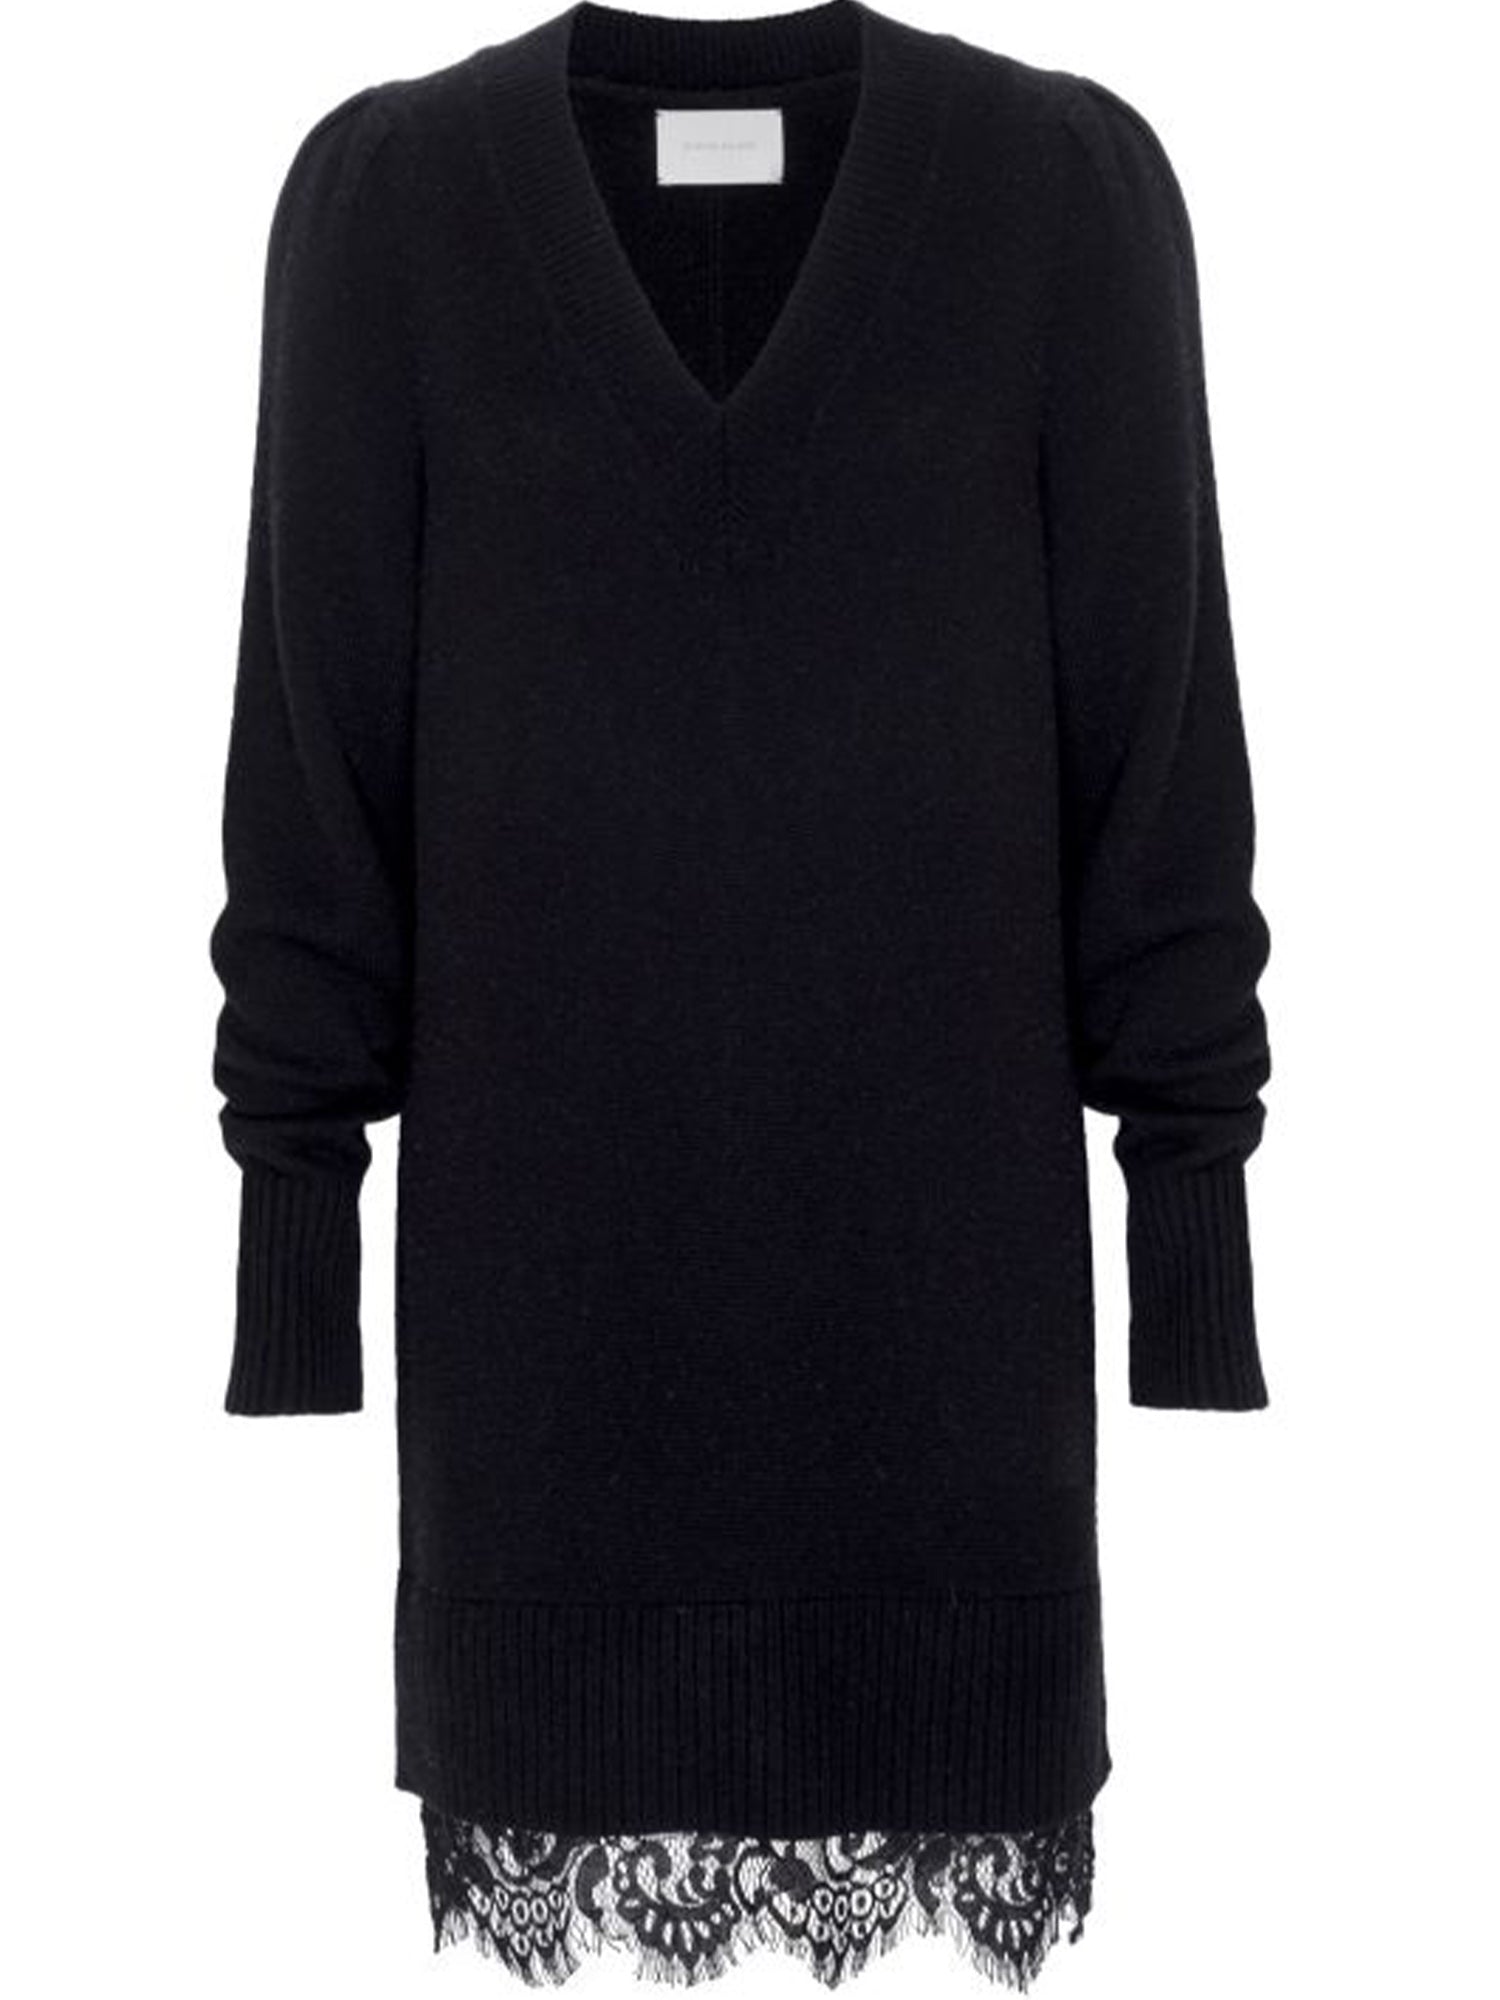 Brochu Walker Women's Elisa Lace Looker Sweater Dress, Black